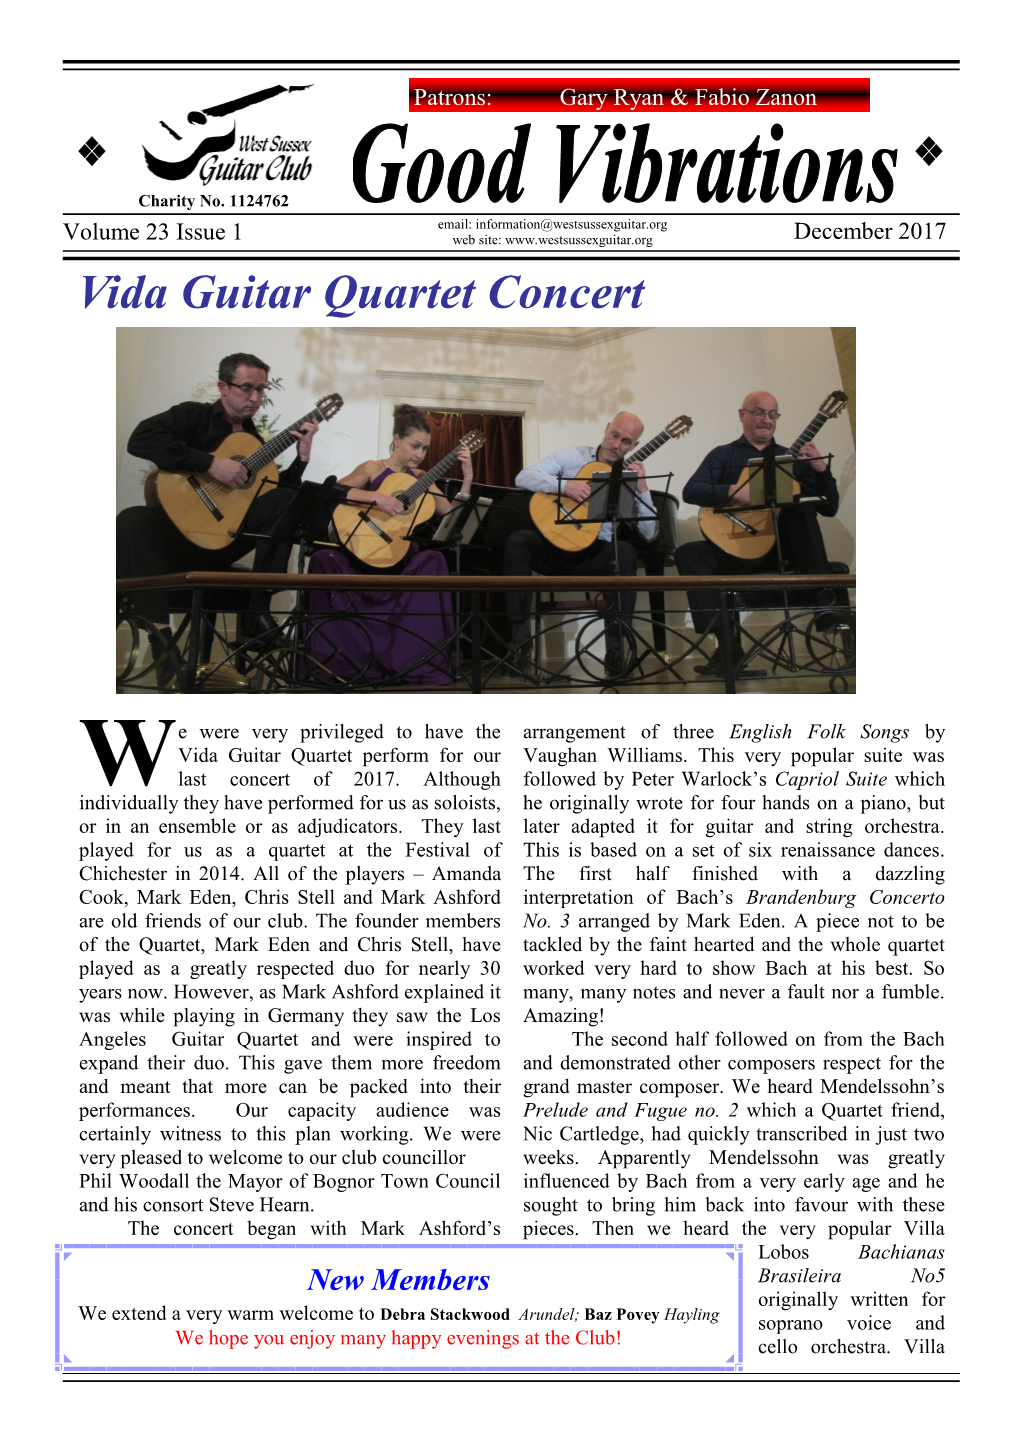 Vida Guitar Quartet Concert